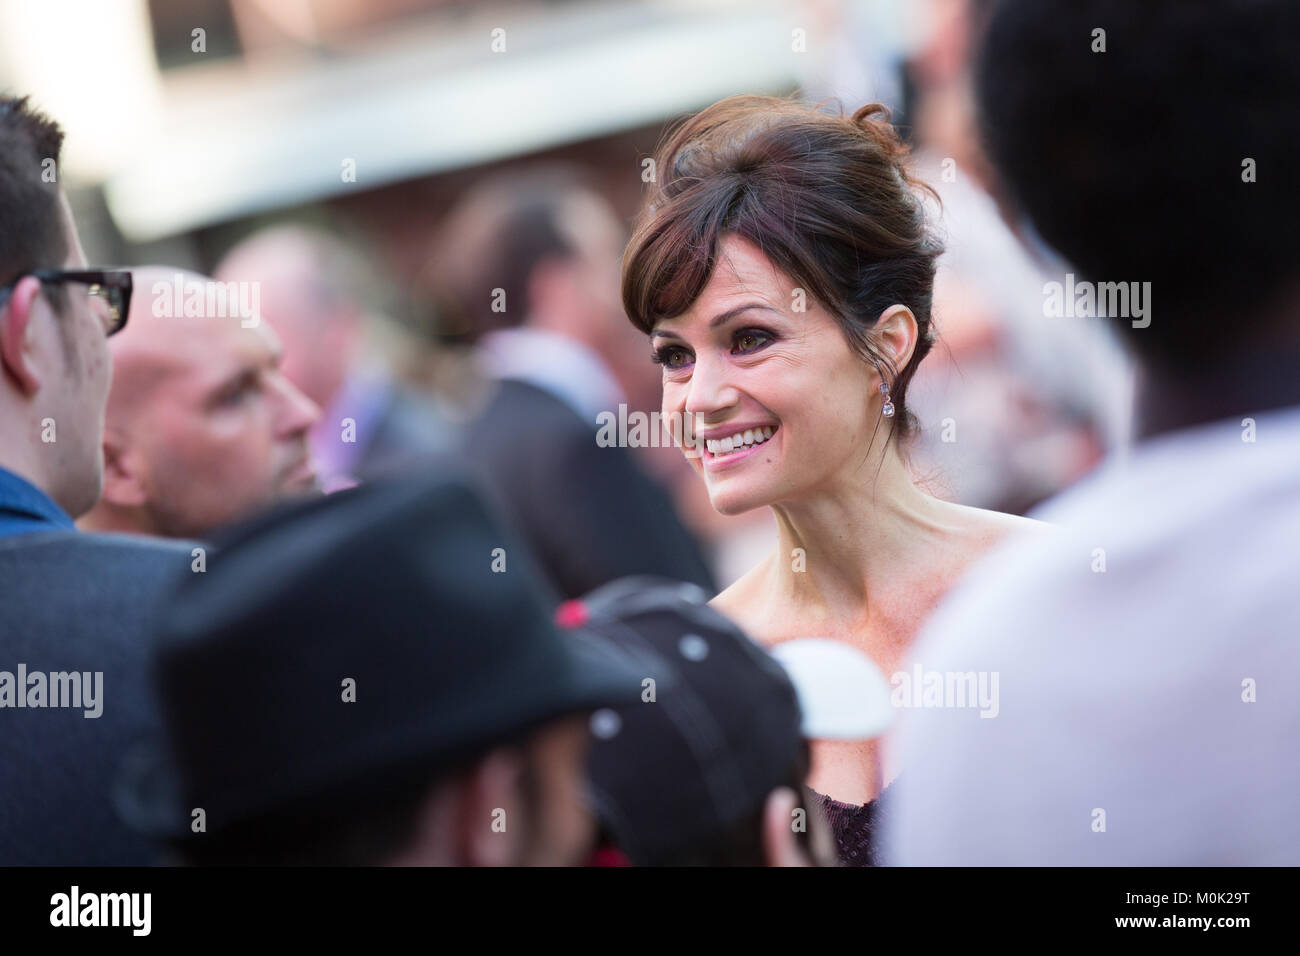 Londra, UK, 21 maggio 2015, Carla Gugino, Premiere mondiale di 'San Andreas' all'Odeon Leicester Square Cinema. Mariusz Goslicki/Alamy Foto Stock